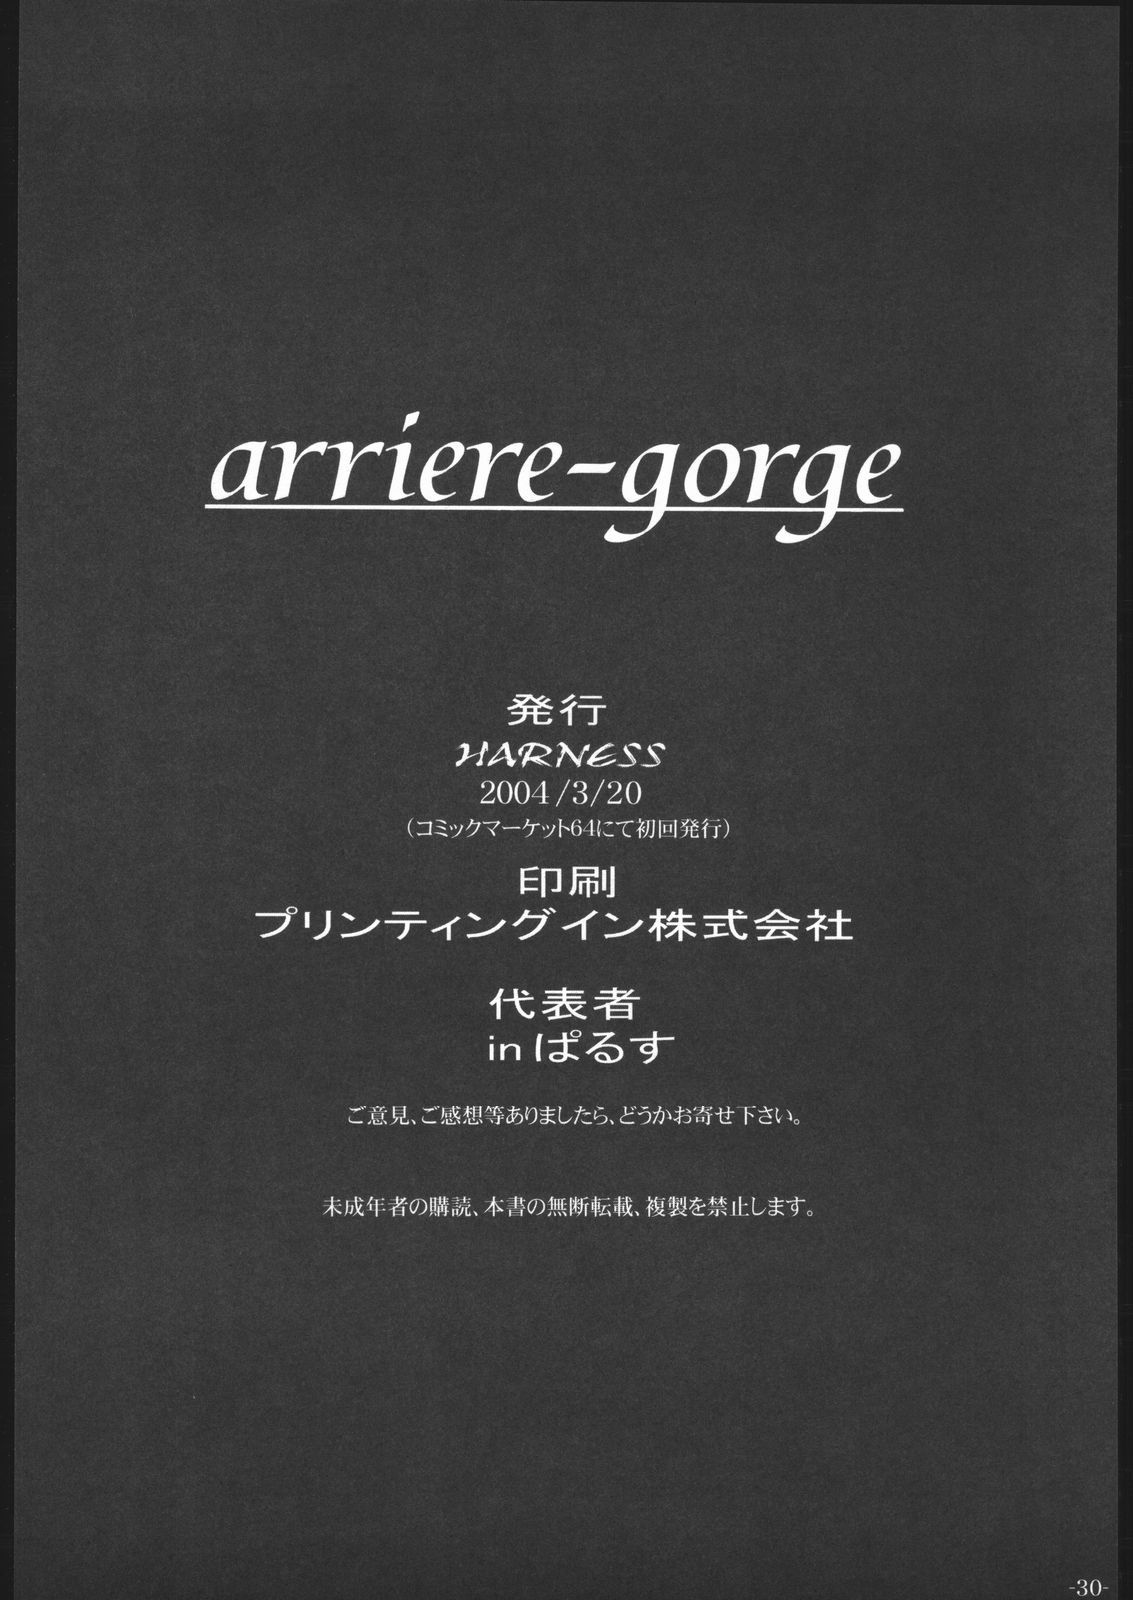 【サクラ大戦】arriere-gorge（ハーネス）